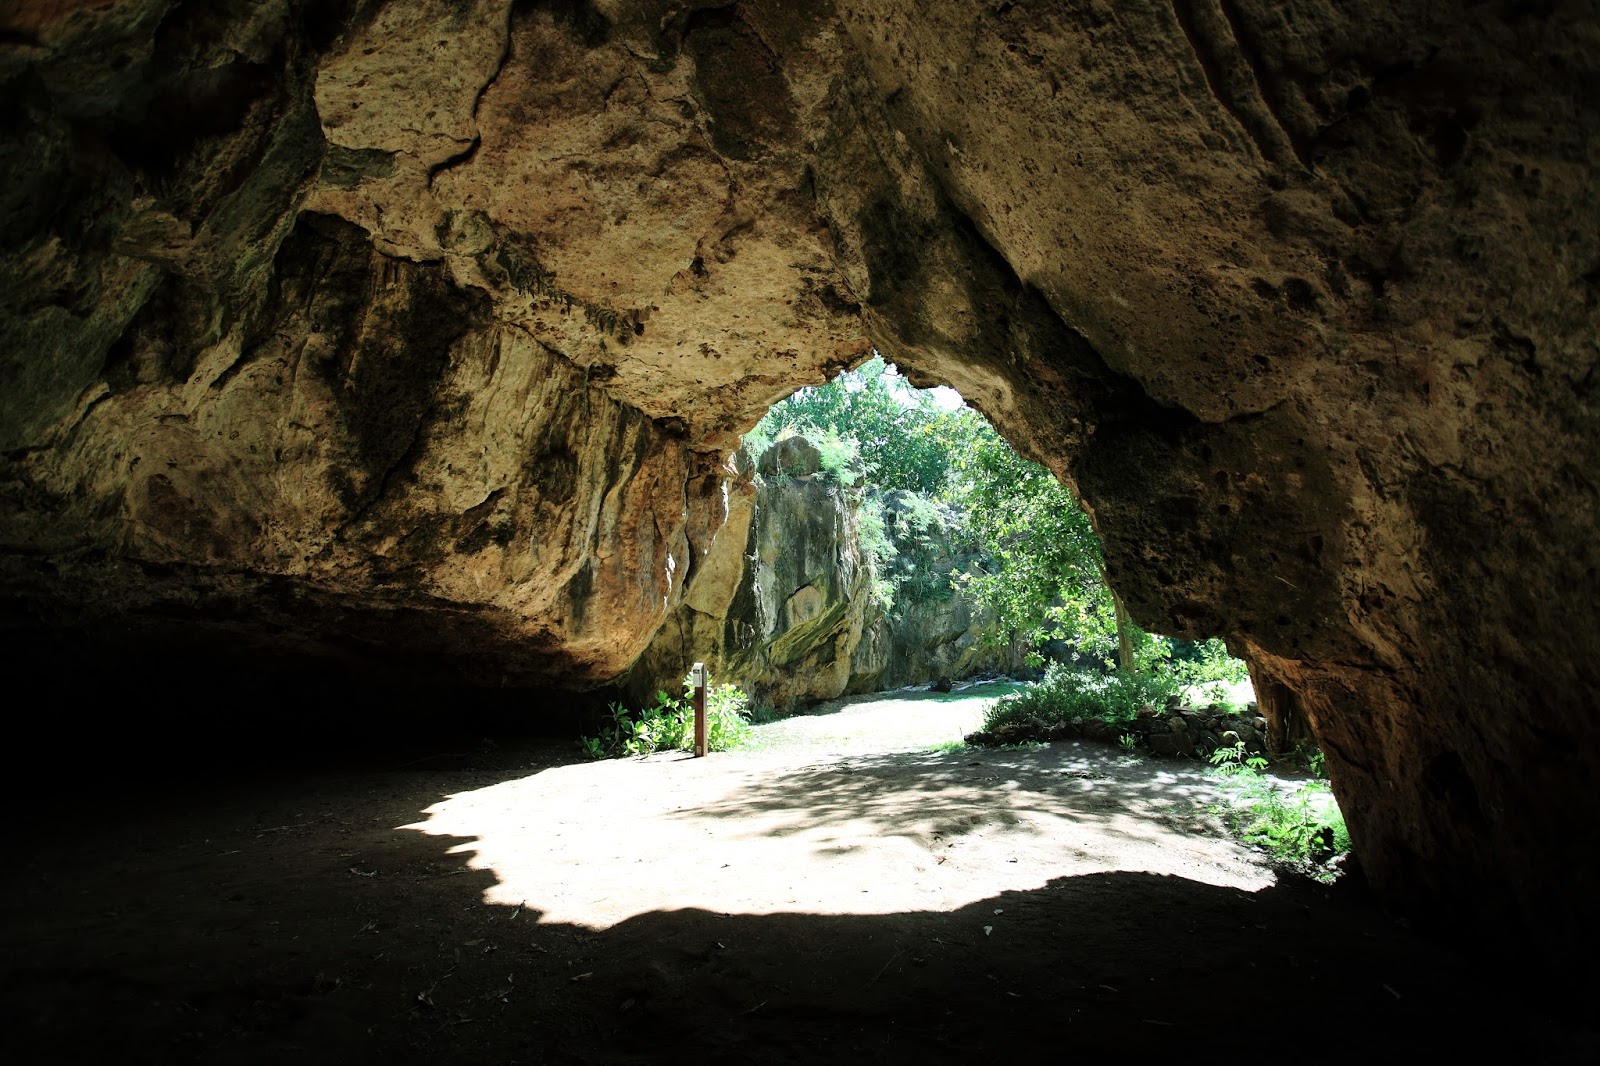 Makauwahi Cave - Kauai, Hawaii